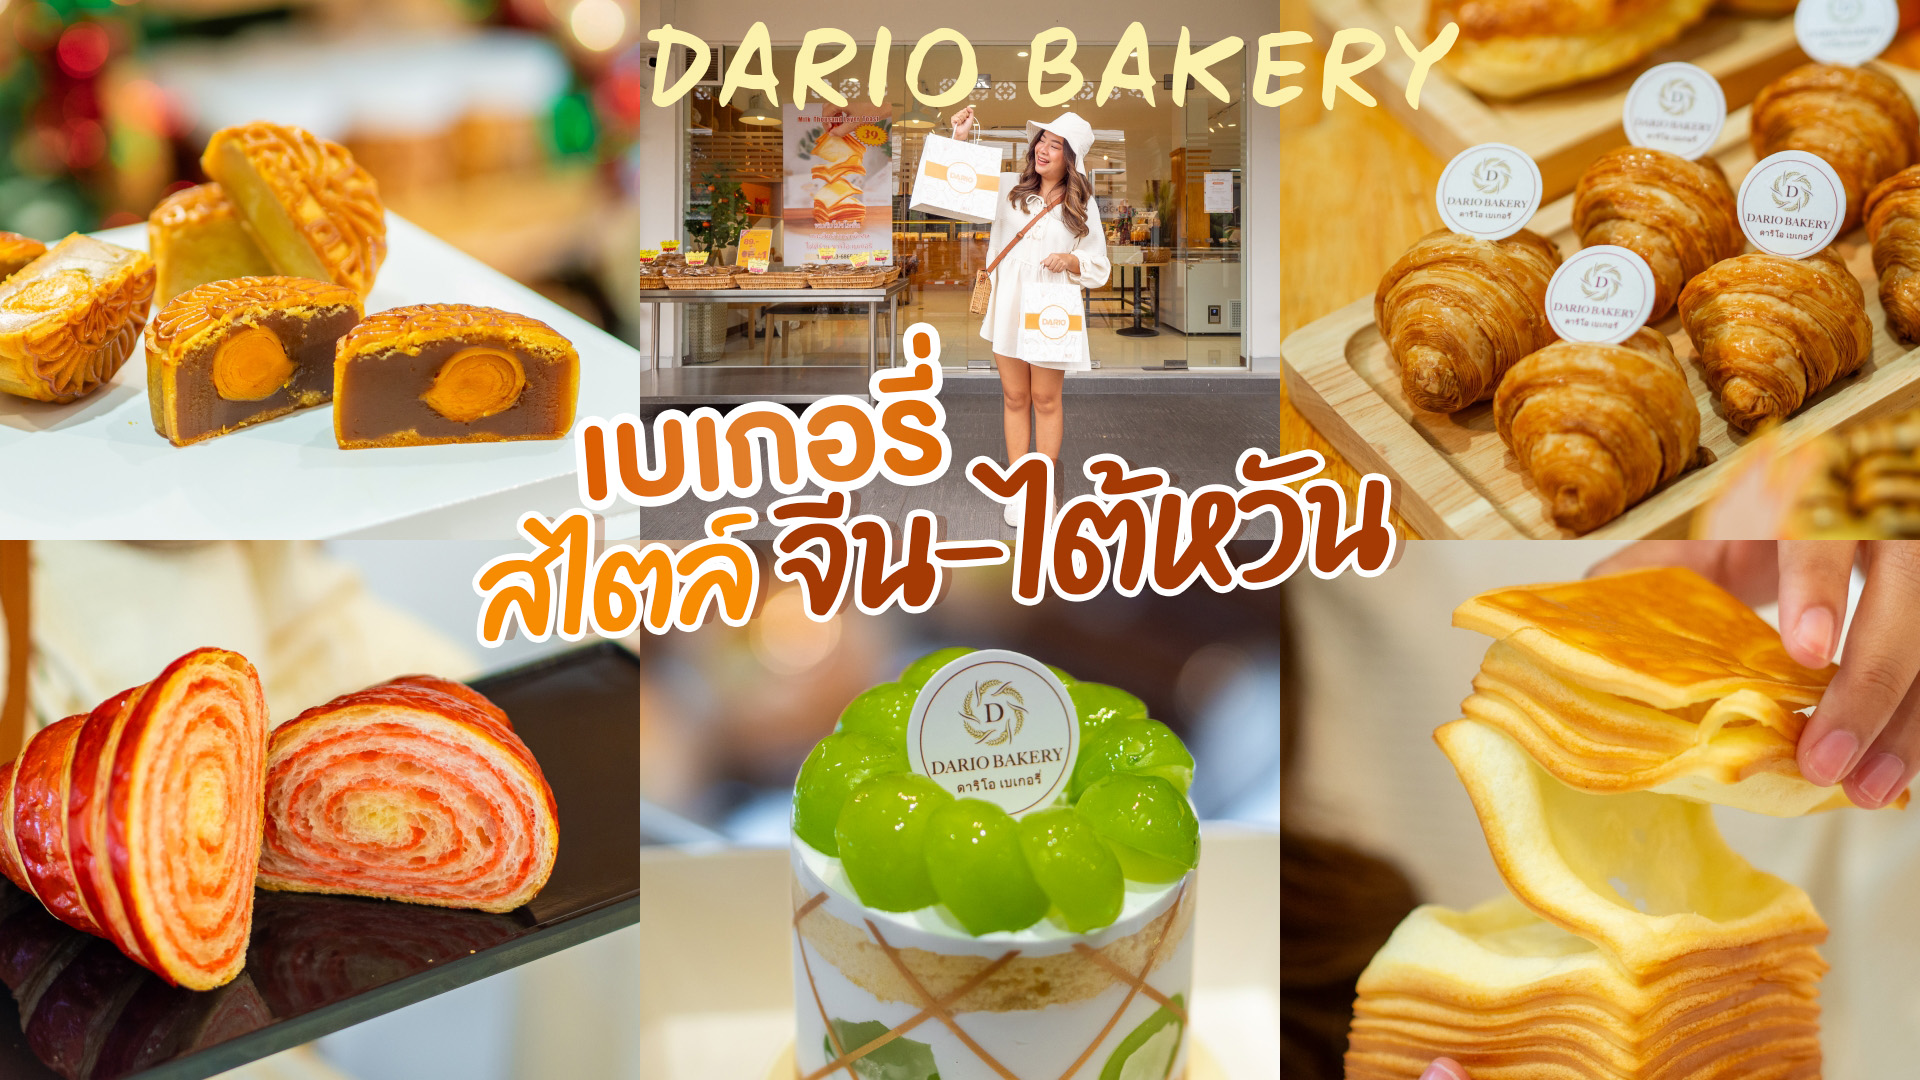 Dario Bakery Phuket เบเกอรี่สไตล์ จีน-ไต้หวัน เปิดใหม่ ภูเก็ต อบสดใหม่ทุกวัน